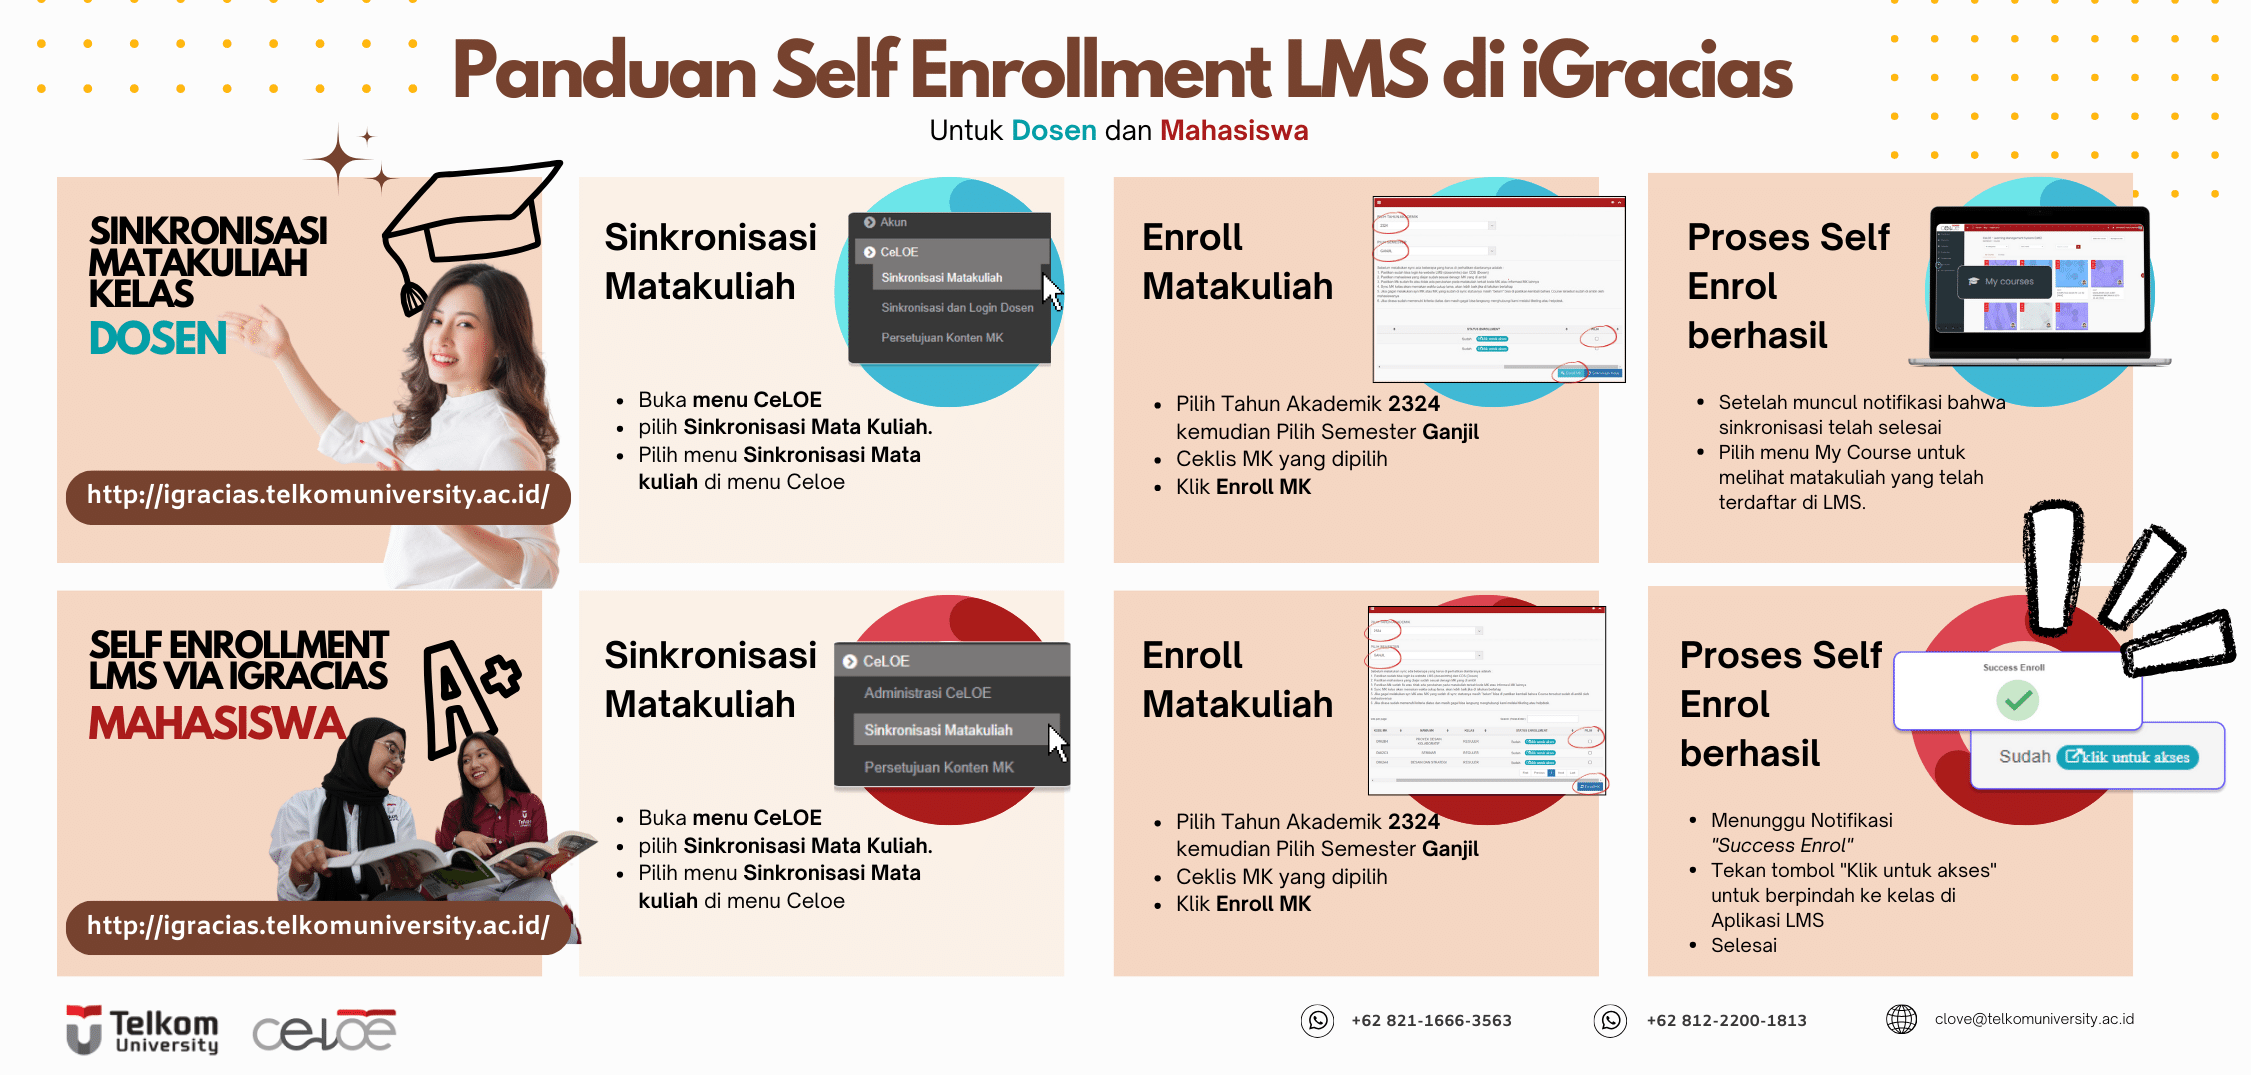 https://celoe.telkomuniversity.ac.id/Panduan Enrollment LMS bagi Dosen dan Mahasiswa Telkom University